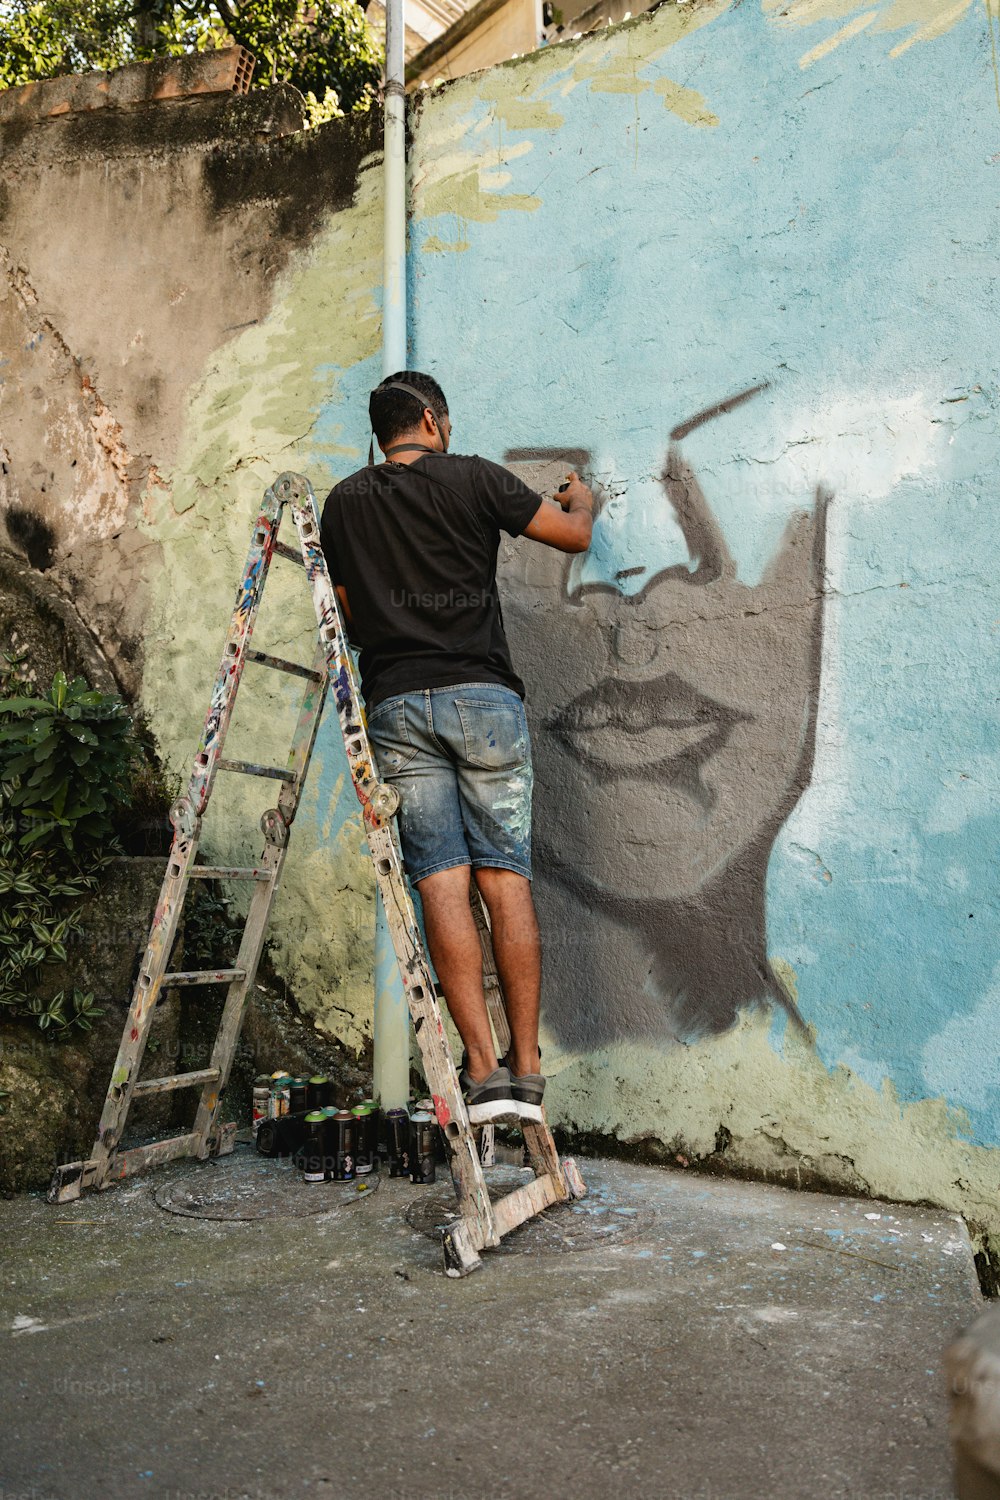 Un homme sur une échelle peignant une peinture murale sur un mur